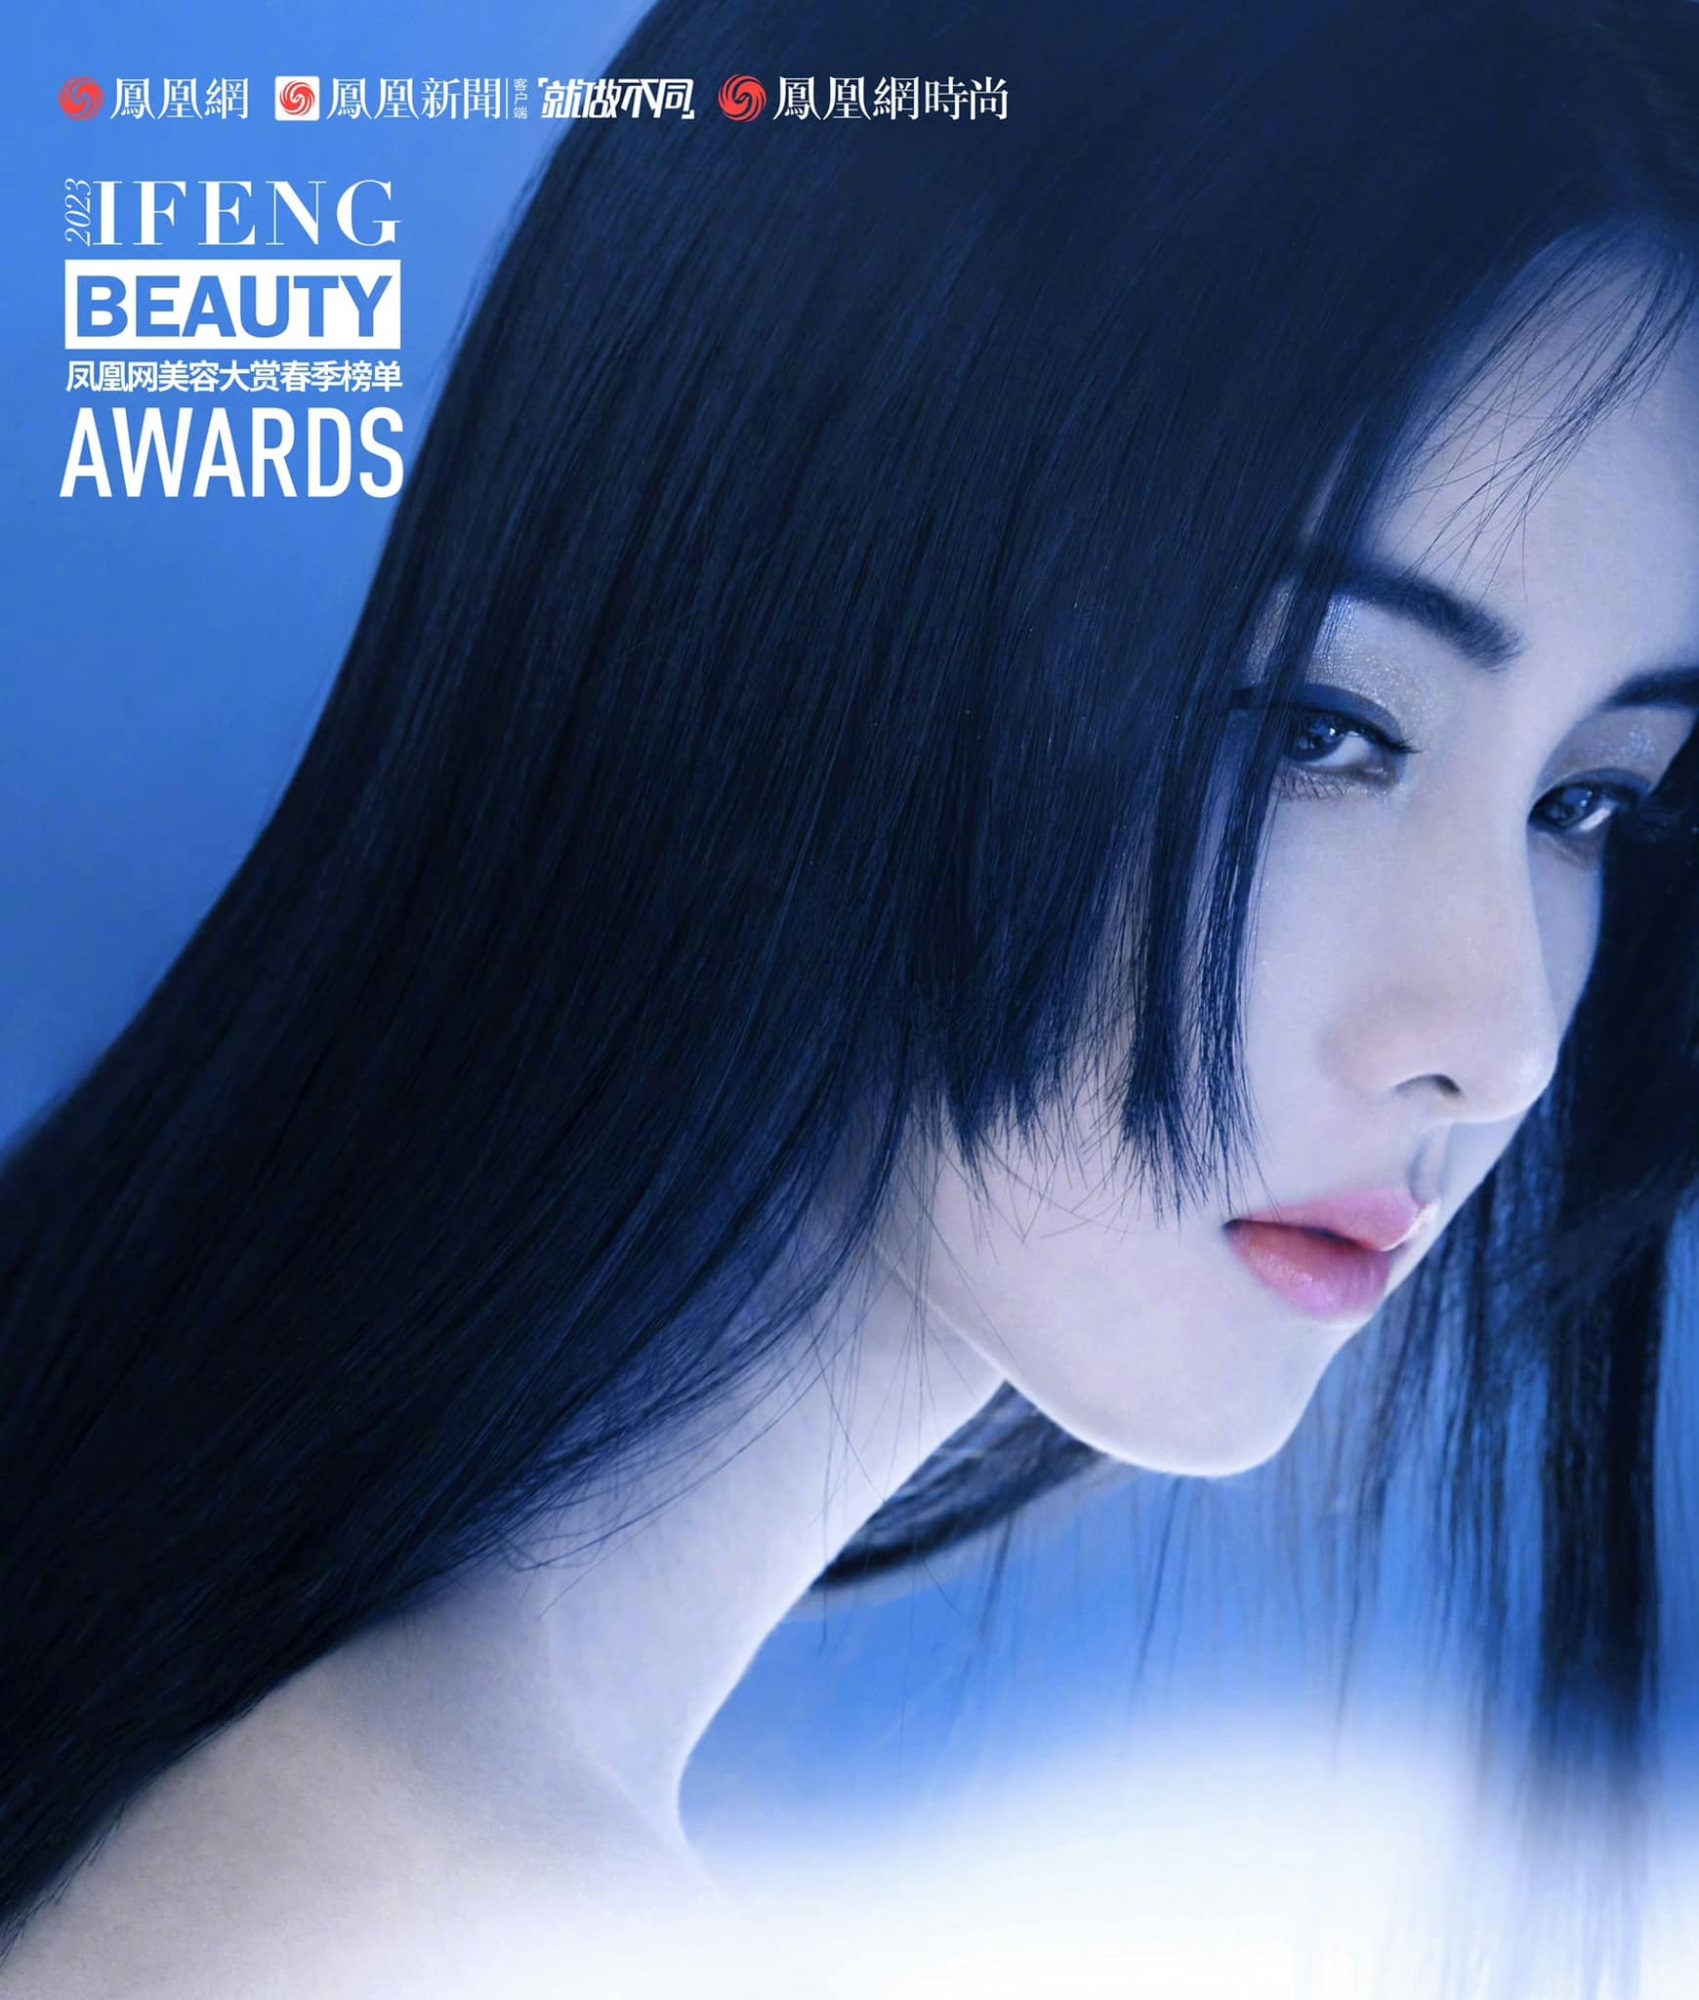 Trần Đô Linh trở thành đại sứ mùa xuân của tạp chí Ifeng Beauty Awards, xinh đẹp 'động lòng người' nhưng không bằng 'đàn chị' Triệu Lệ Dĩnh ở một điểm - Ảnh 3